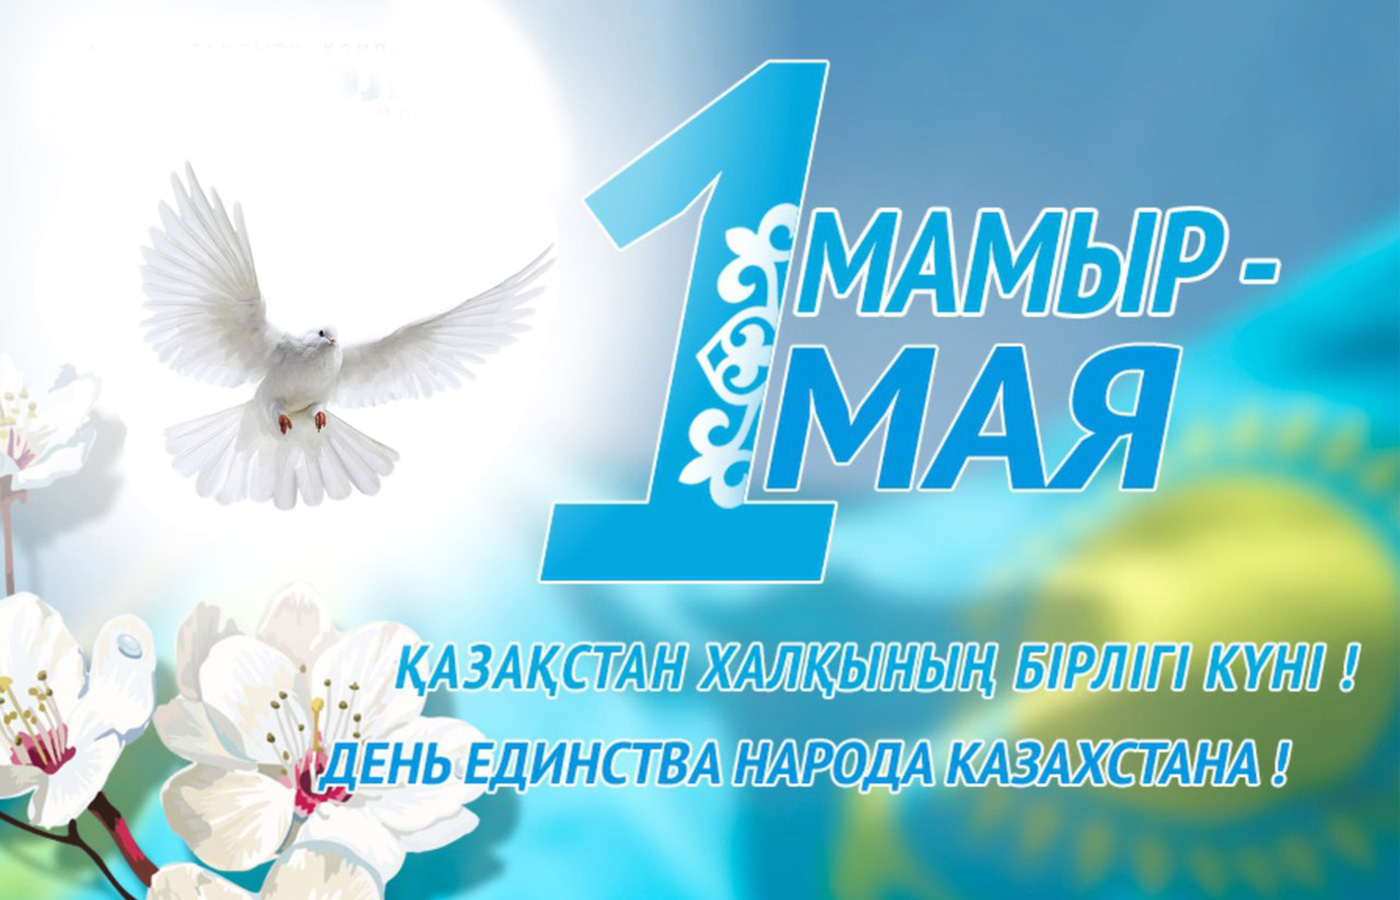 Поздравляем с 1 мая — Днем единства народа Казахстана!